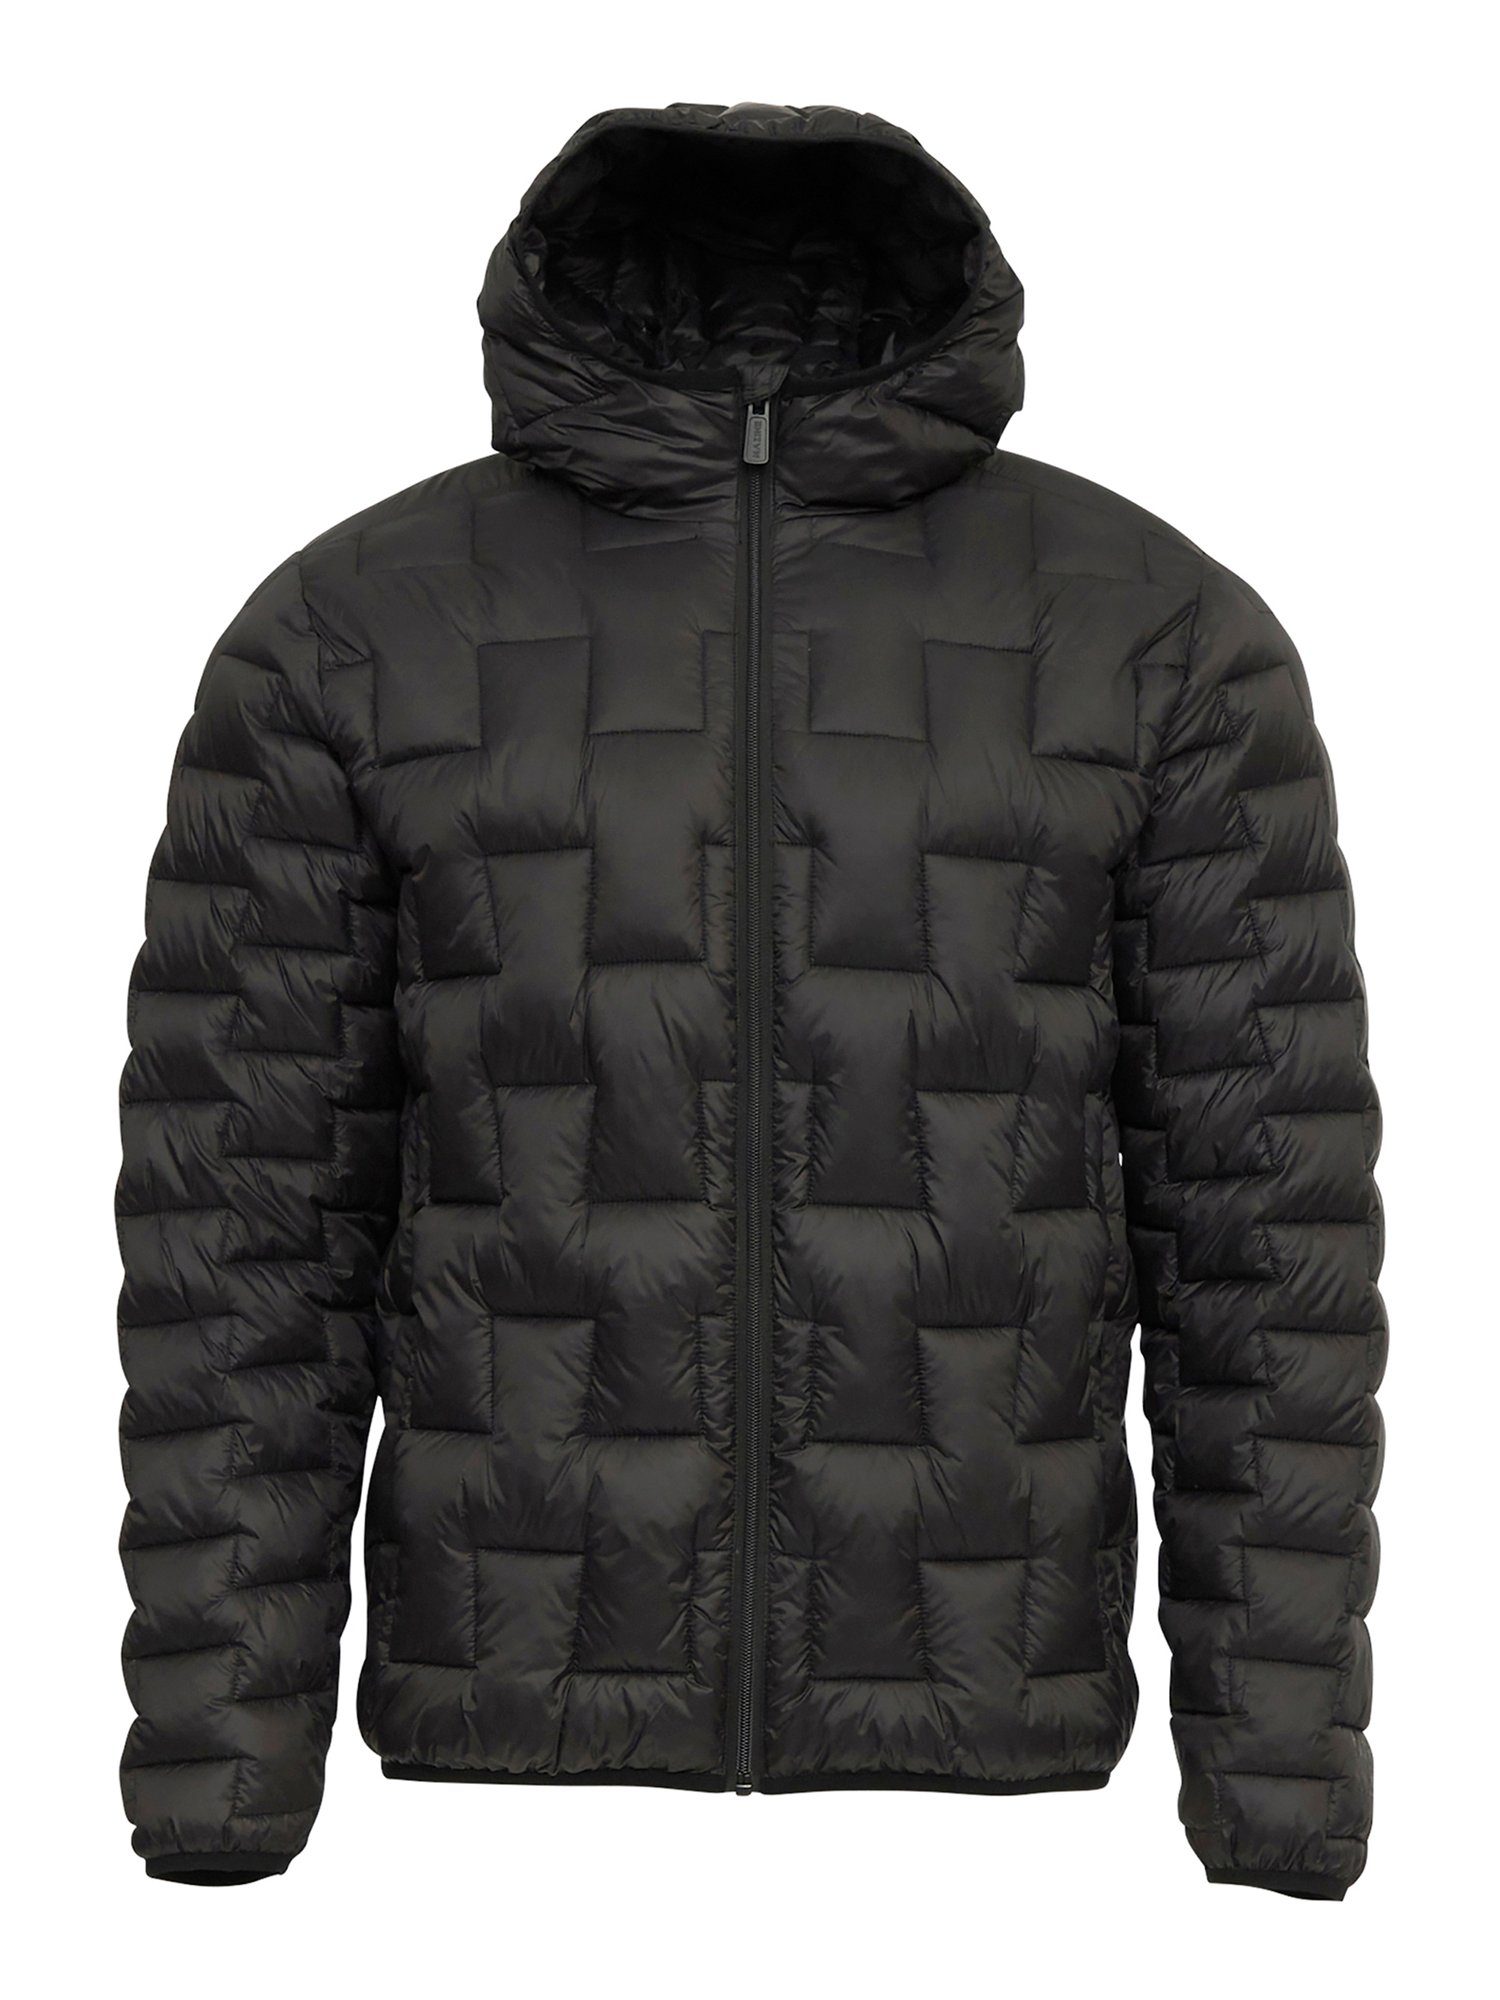 MAZINE Winterjacke Connelly Light Padded gefüttert Jacket black warm